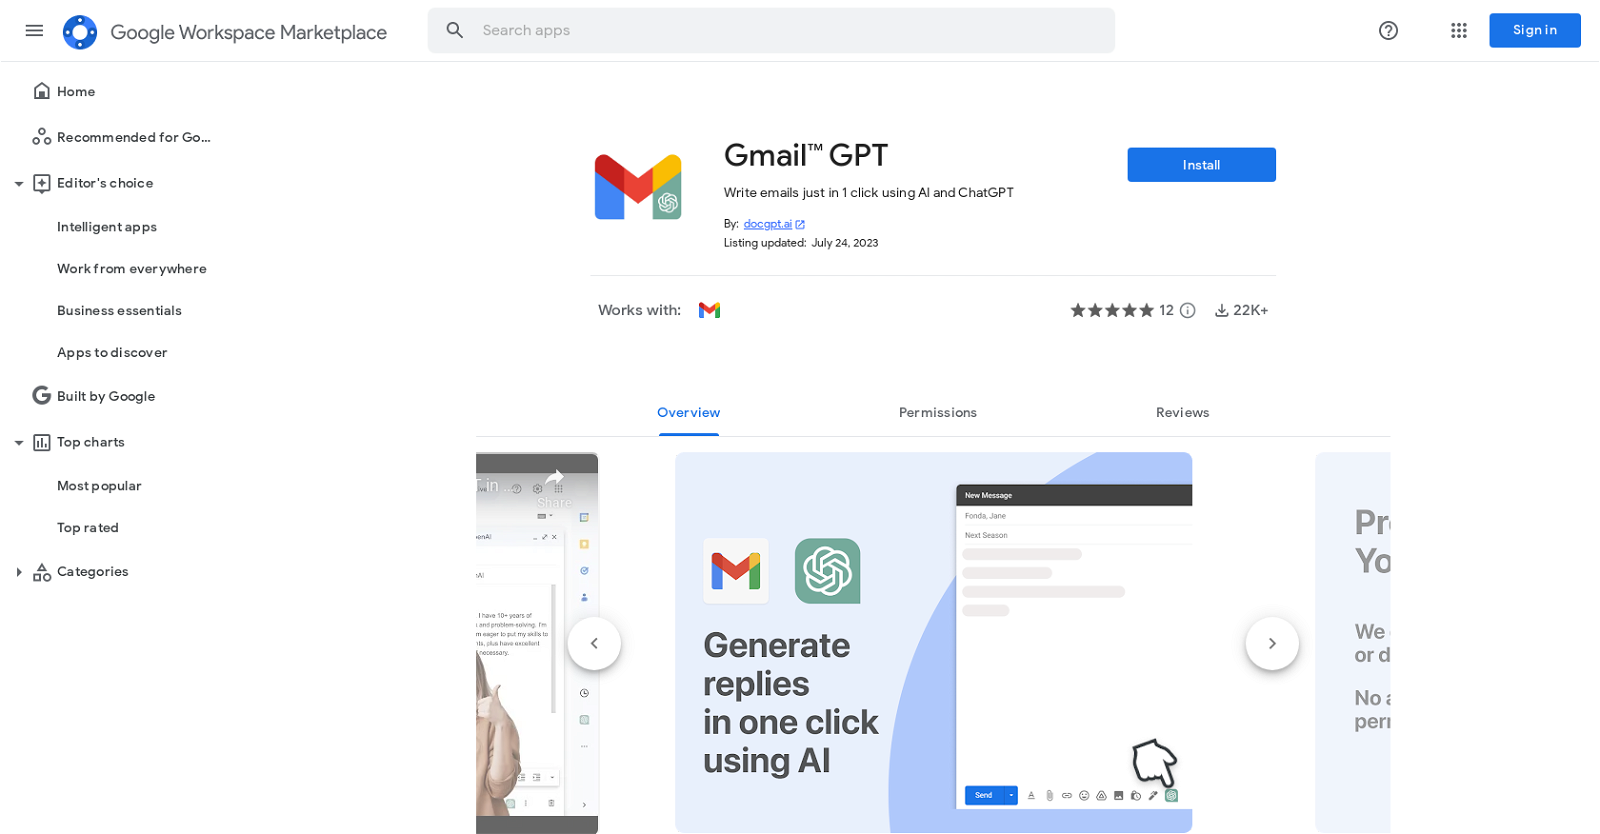 GmailGPT website